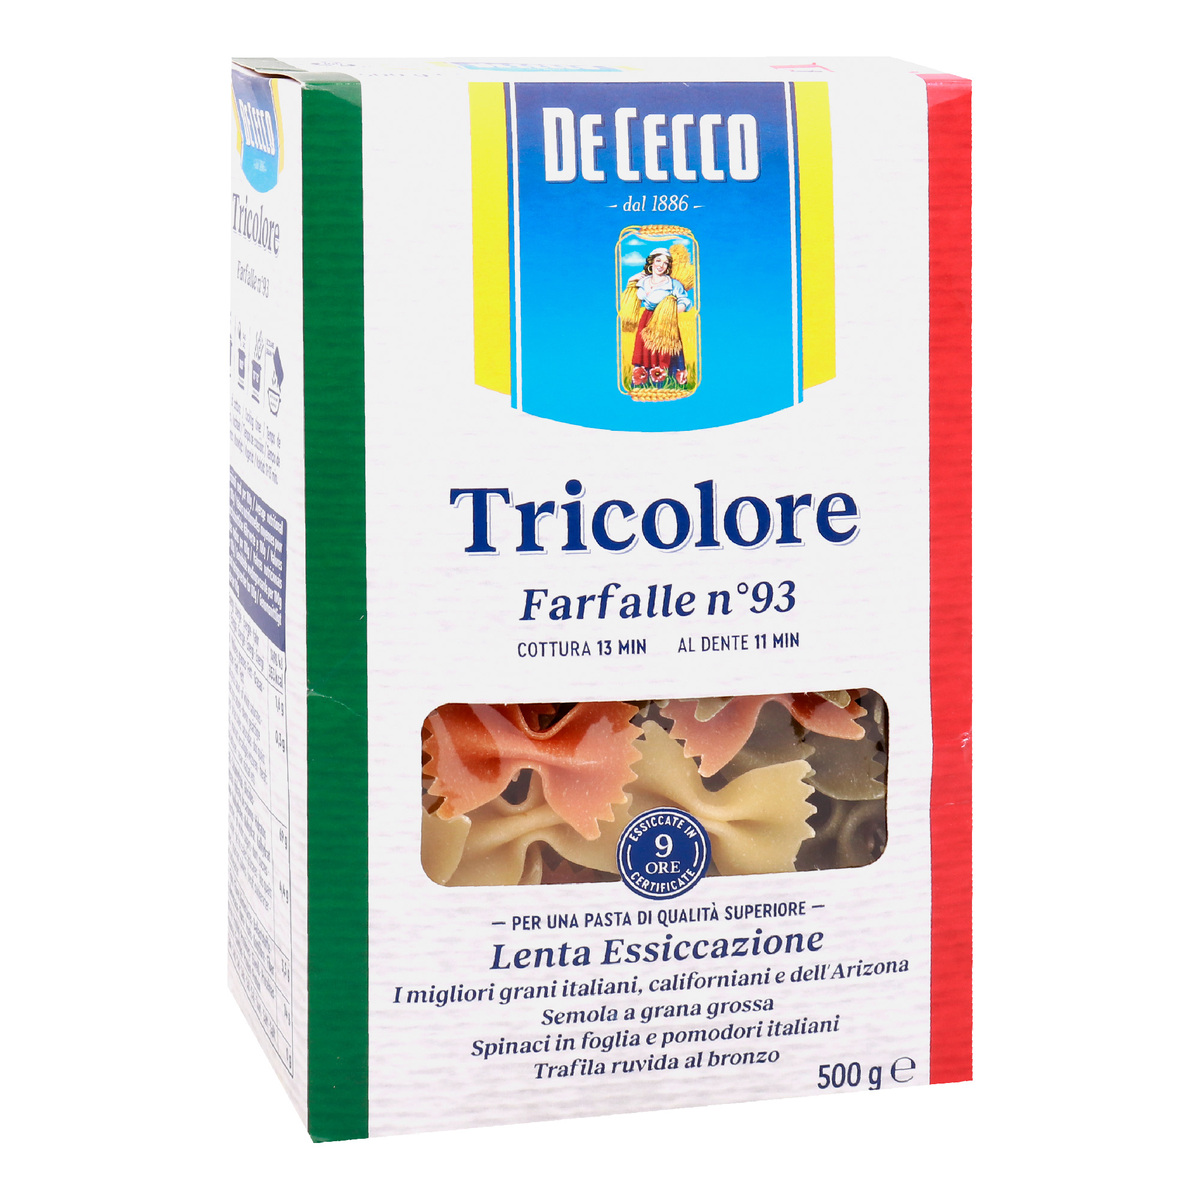 De Cecco Tricolore Farfalle Pasta No. 93 500g